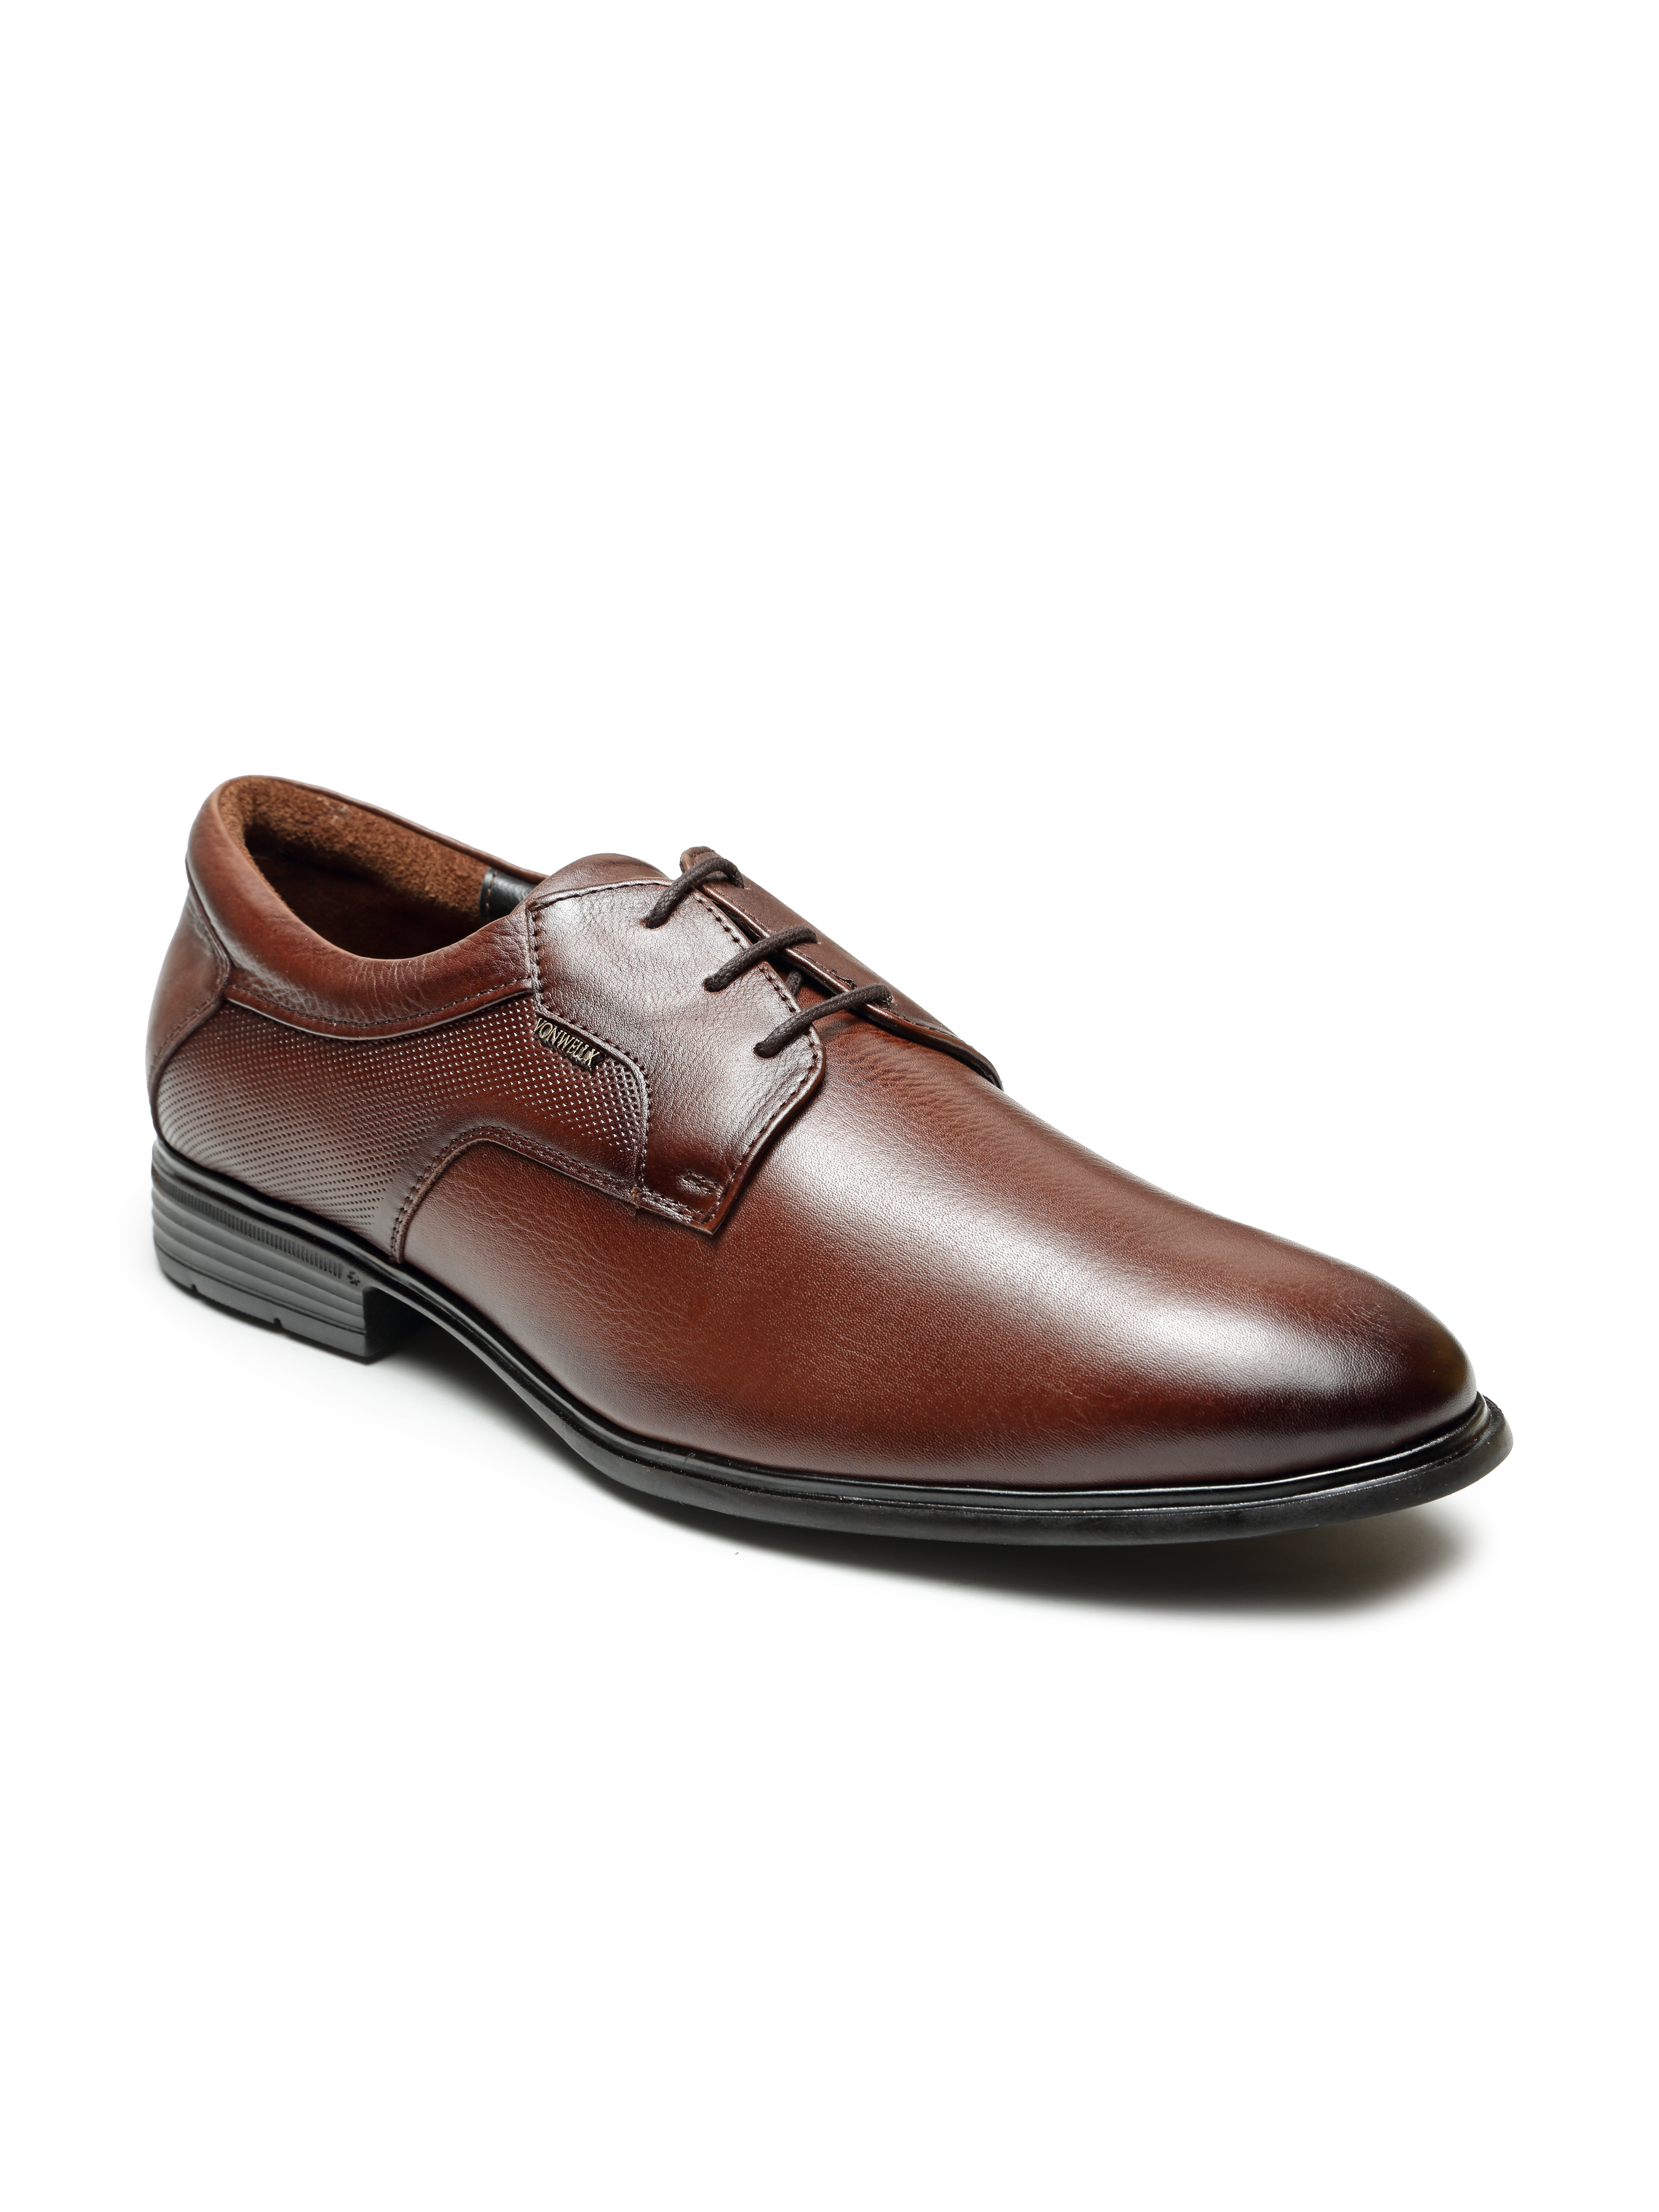 Buy Von Wellx Germany Comfort Men's Brown Formal Shoes Adler Online in Oman